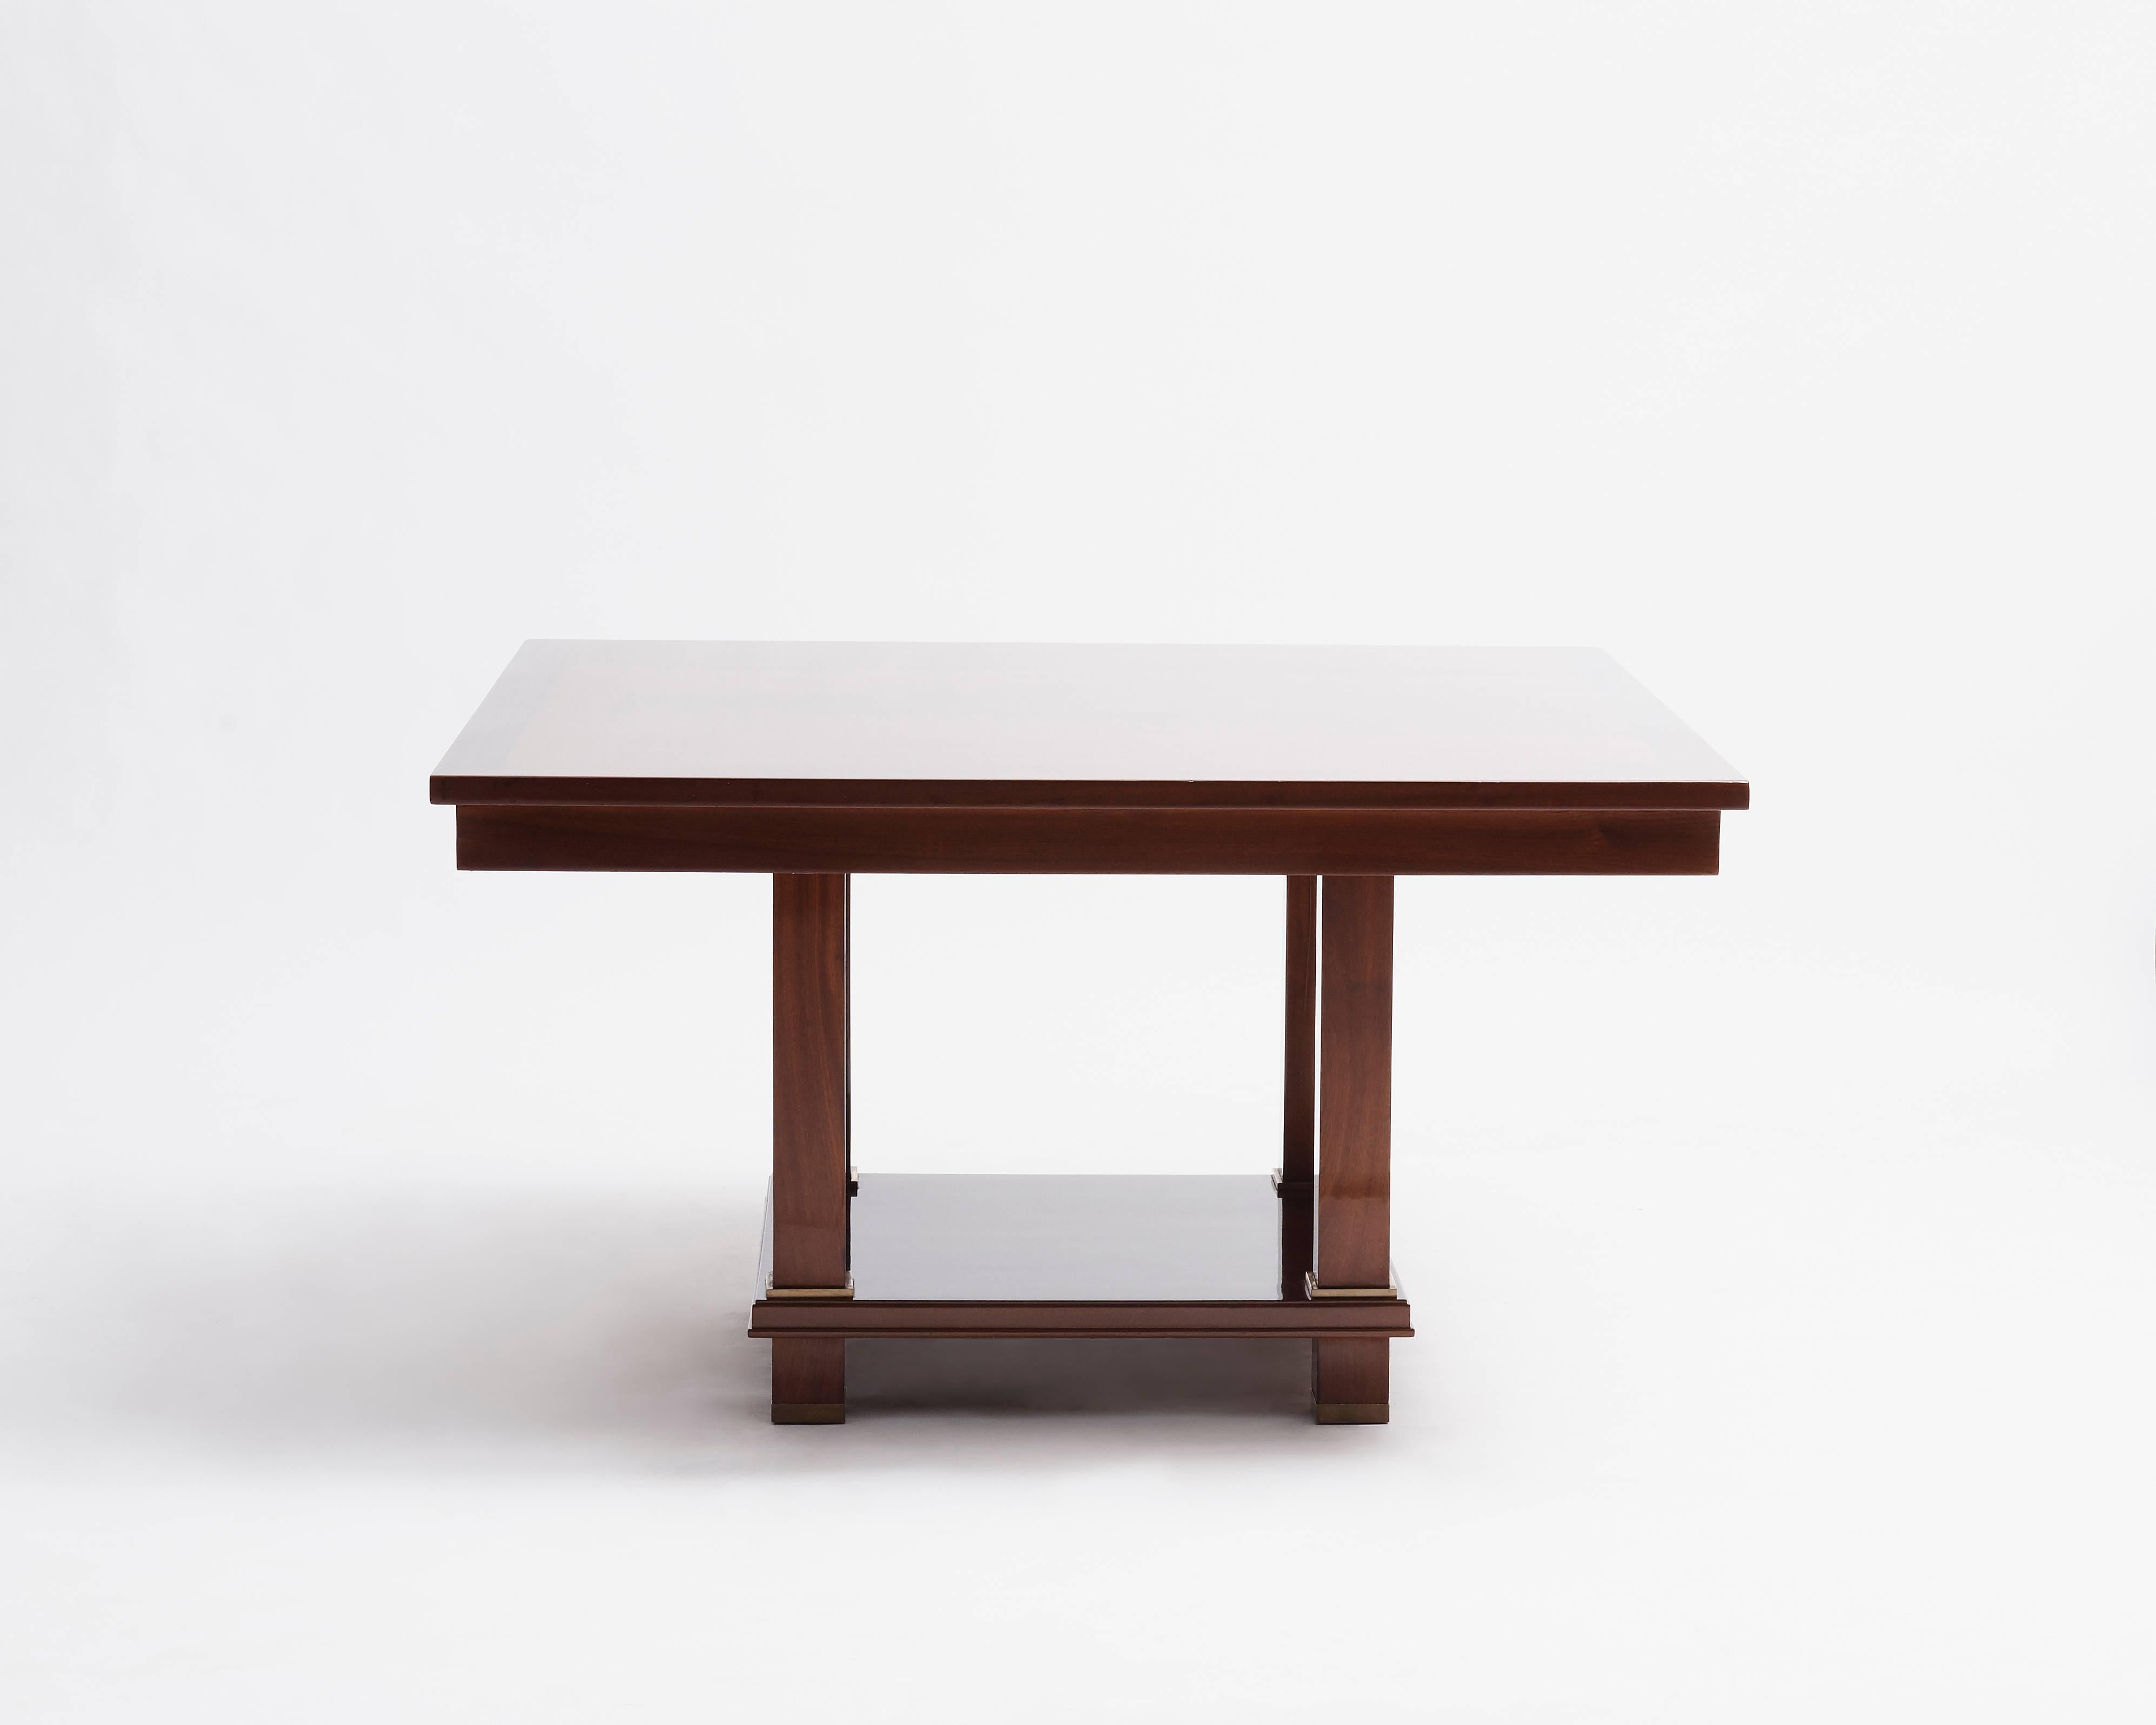 Cette table fait partie d'un projet que Jacques Adnet a entrepris avec son collègue André Arbus pour redécorer le Palais des Consuls de Rouen en 1955.